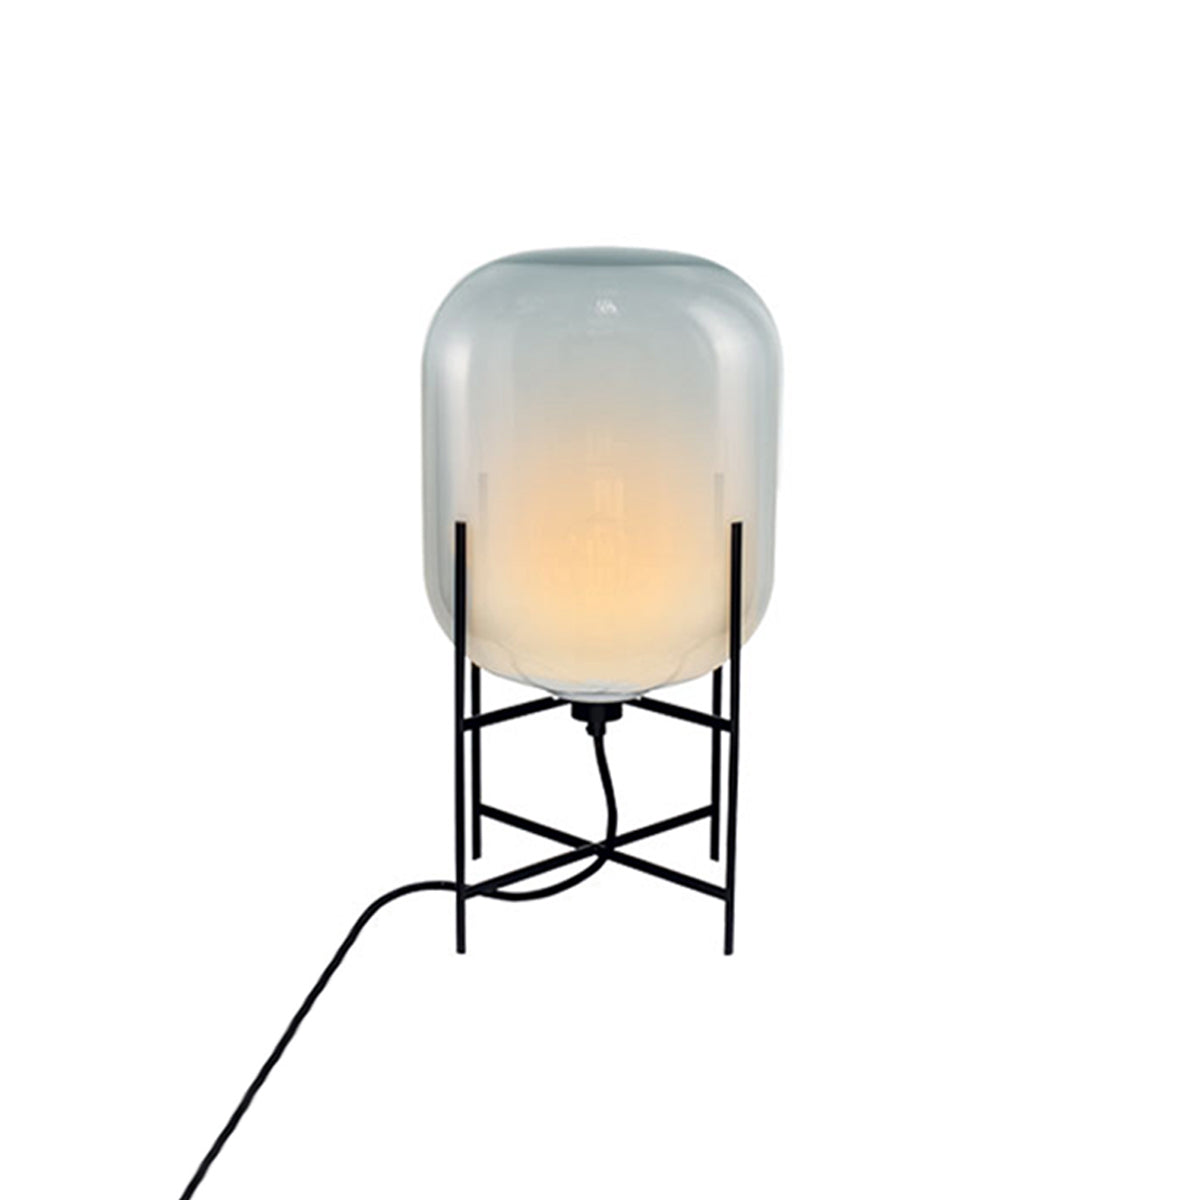 Oda Table Lamp: Moonlight White + Black